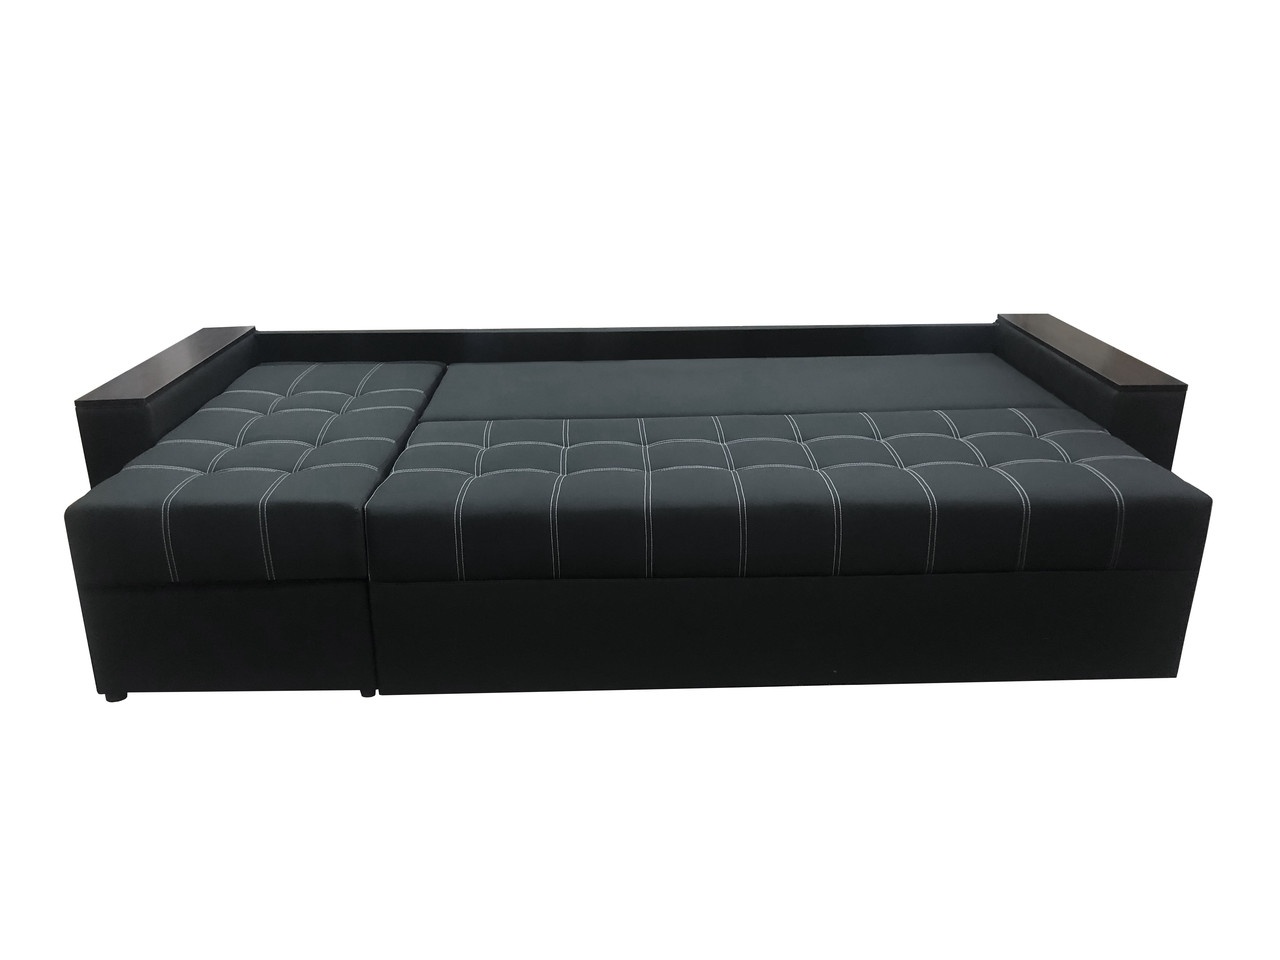 Кутовий диван Комфорт Плюс 3м (чорний, 300х150 см) ІМІ kkmfp-sn-19 фото